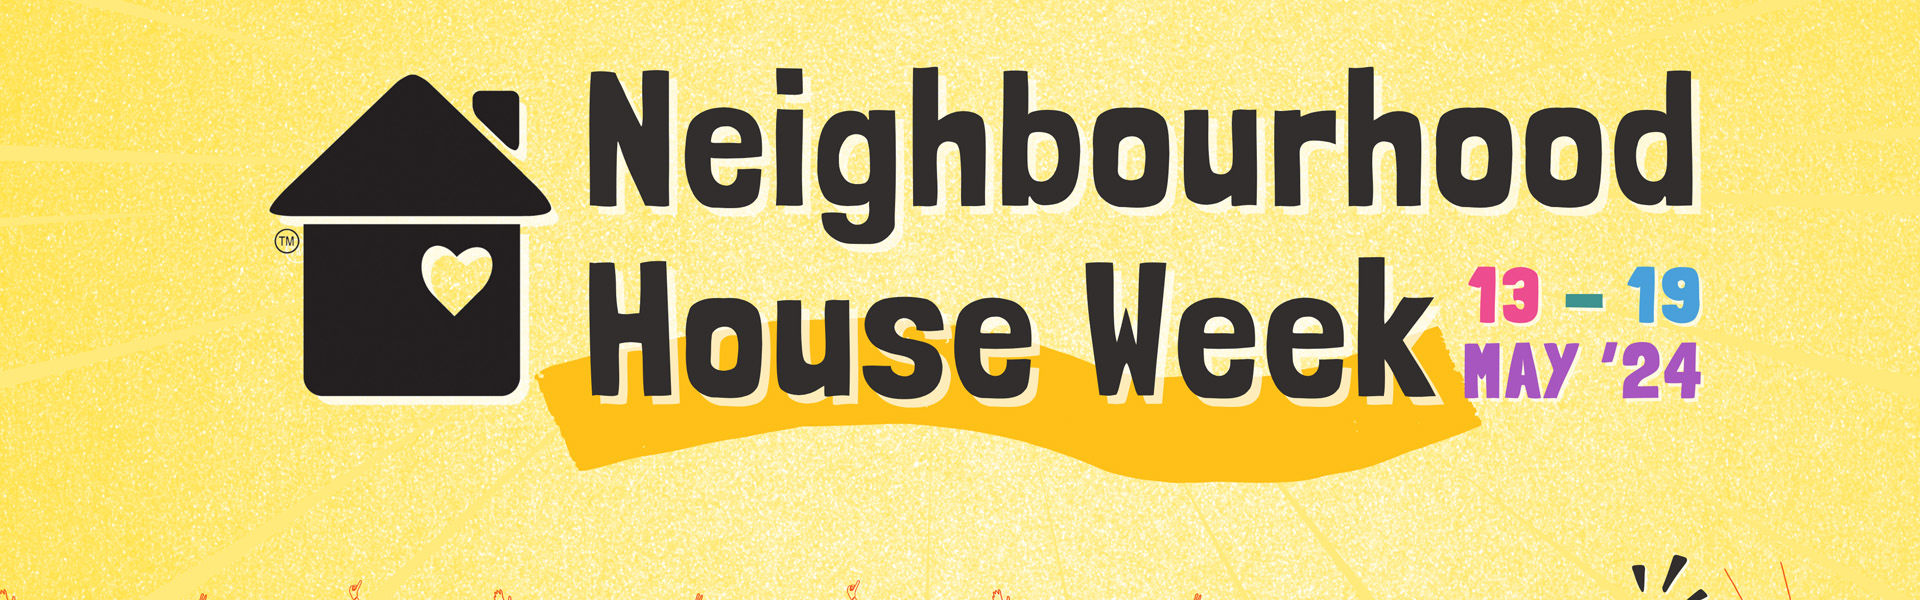 nhood house week banner.jpg